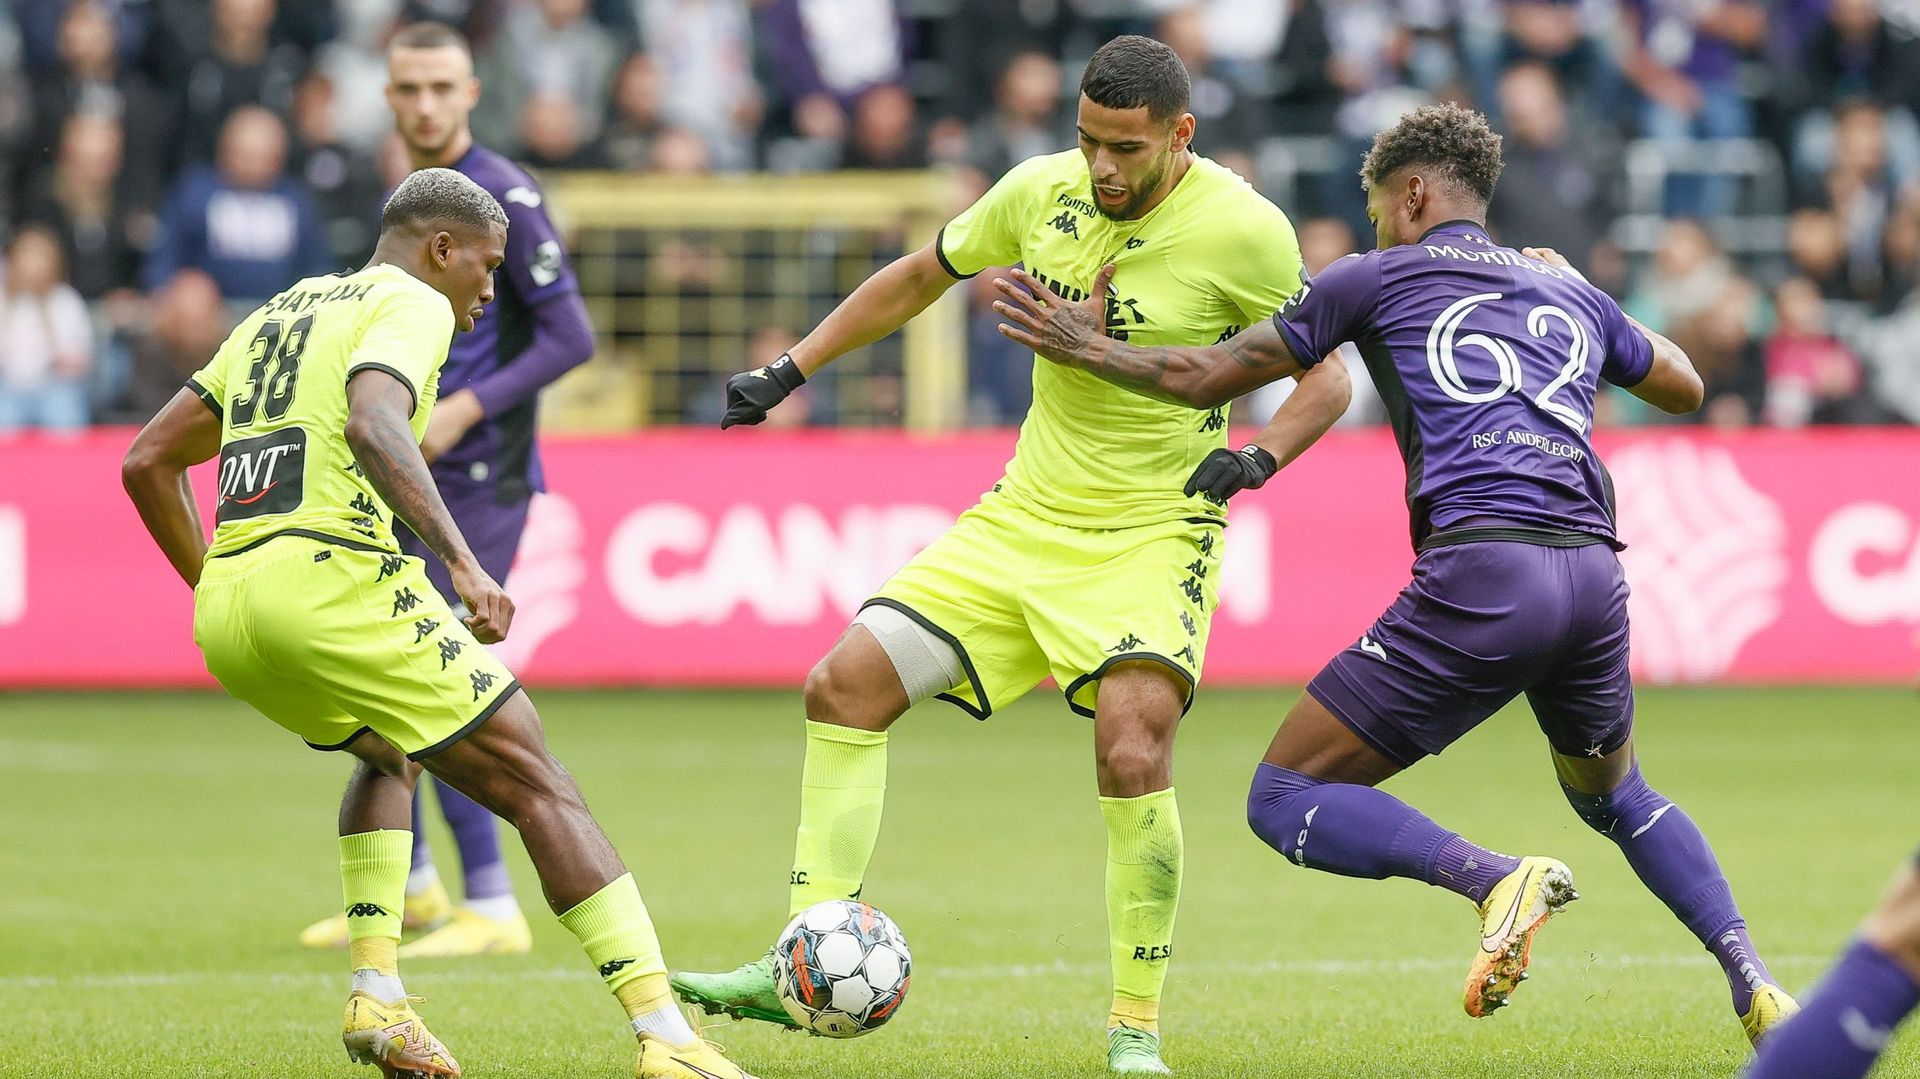 Bruges et Charleroi, les deux clubs de Pro League qui réalisent le plus de passes par match